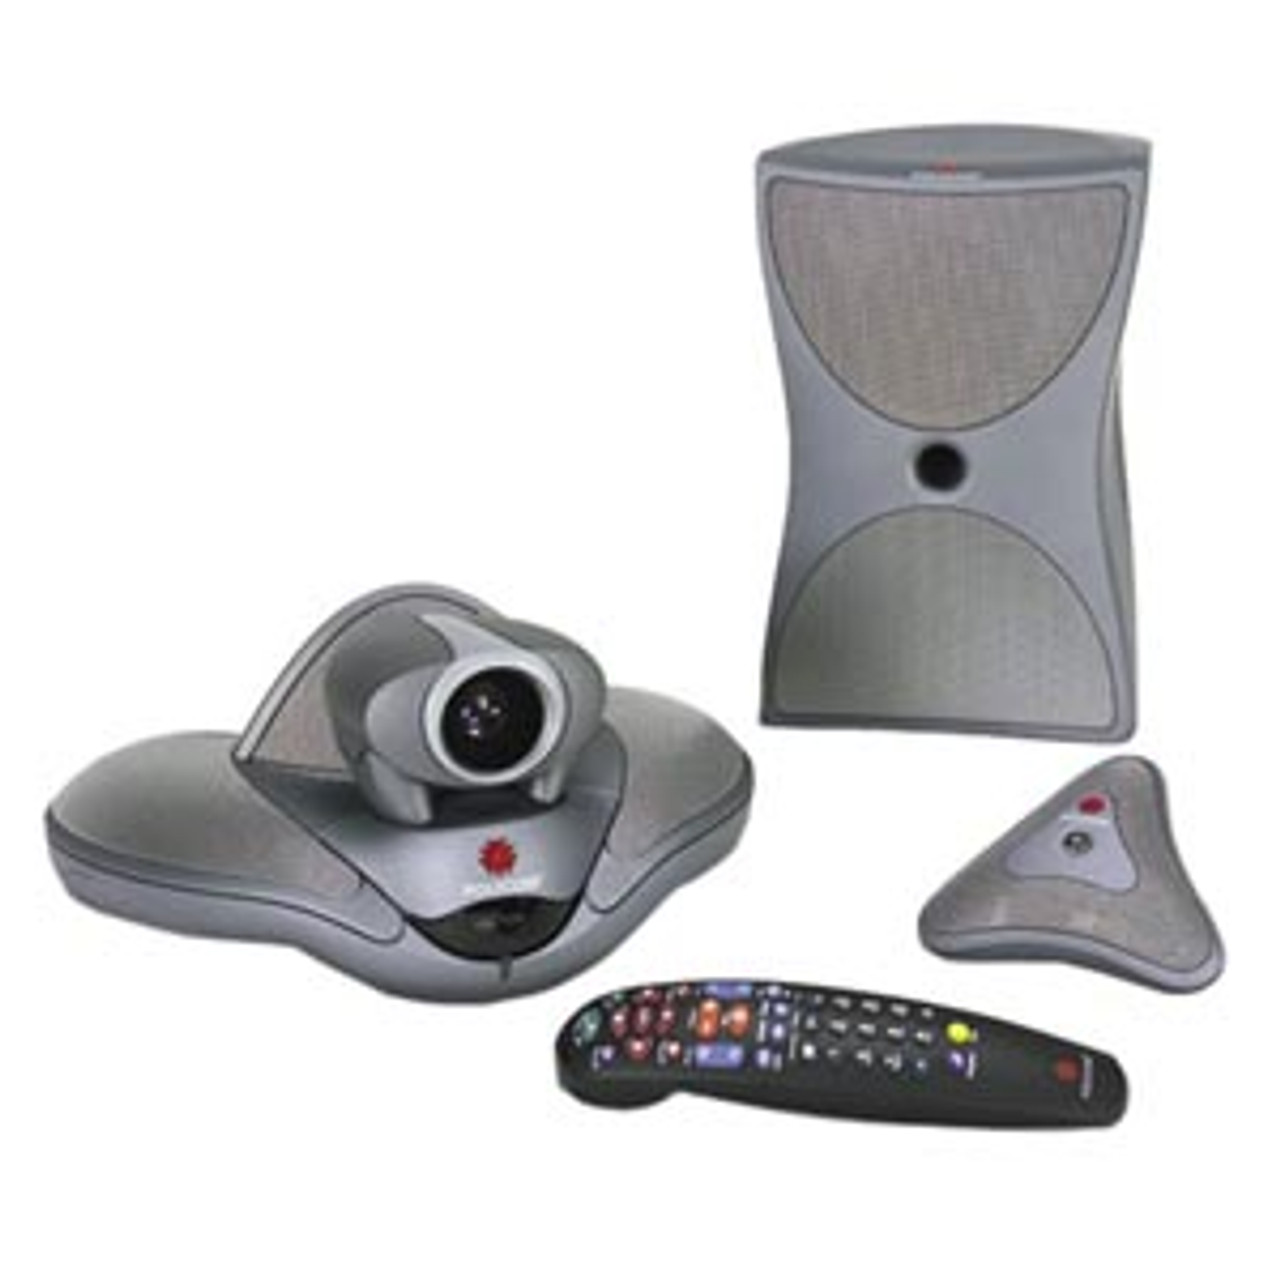 2200-22650-001 Polycom VSX 7000s Video Conferencing Equipment 2Mbps H.320, 2Mbps H.323, 2Mbps SIP, 2Mbps SCCP